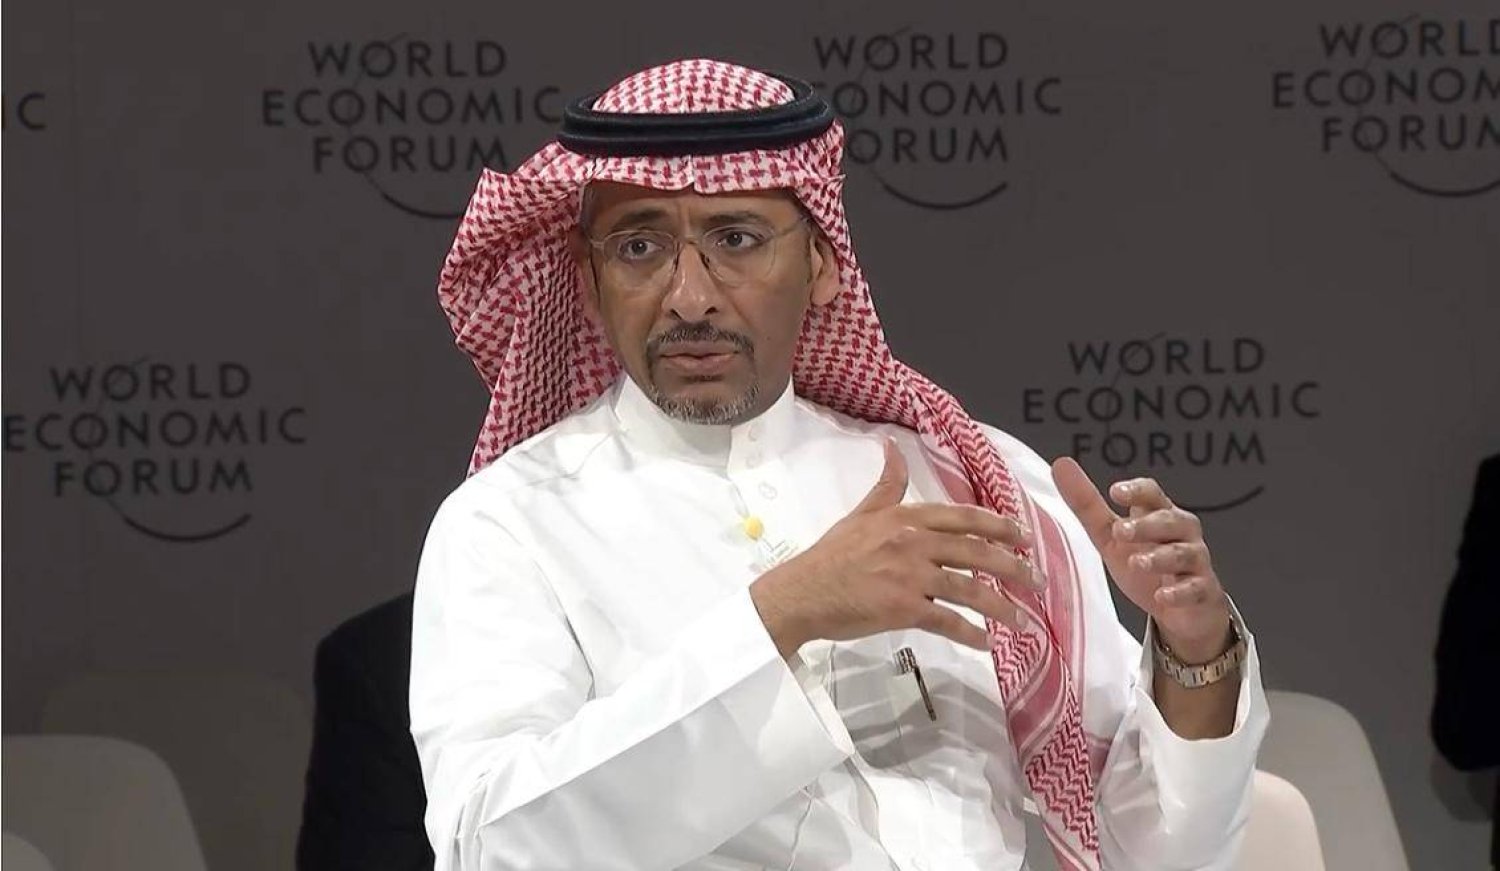 وزير الصناعة والثروة المعدنية السعودي متحدثاً خلال جلسة حوارية ضمن الاجتماع الخاص للمنتدى الاقتصادي العالمي في الرياض (الشرق الأوسط)